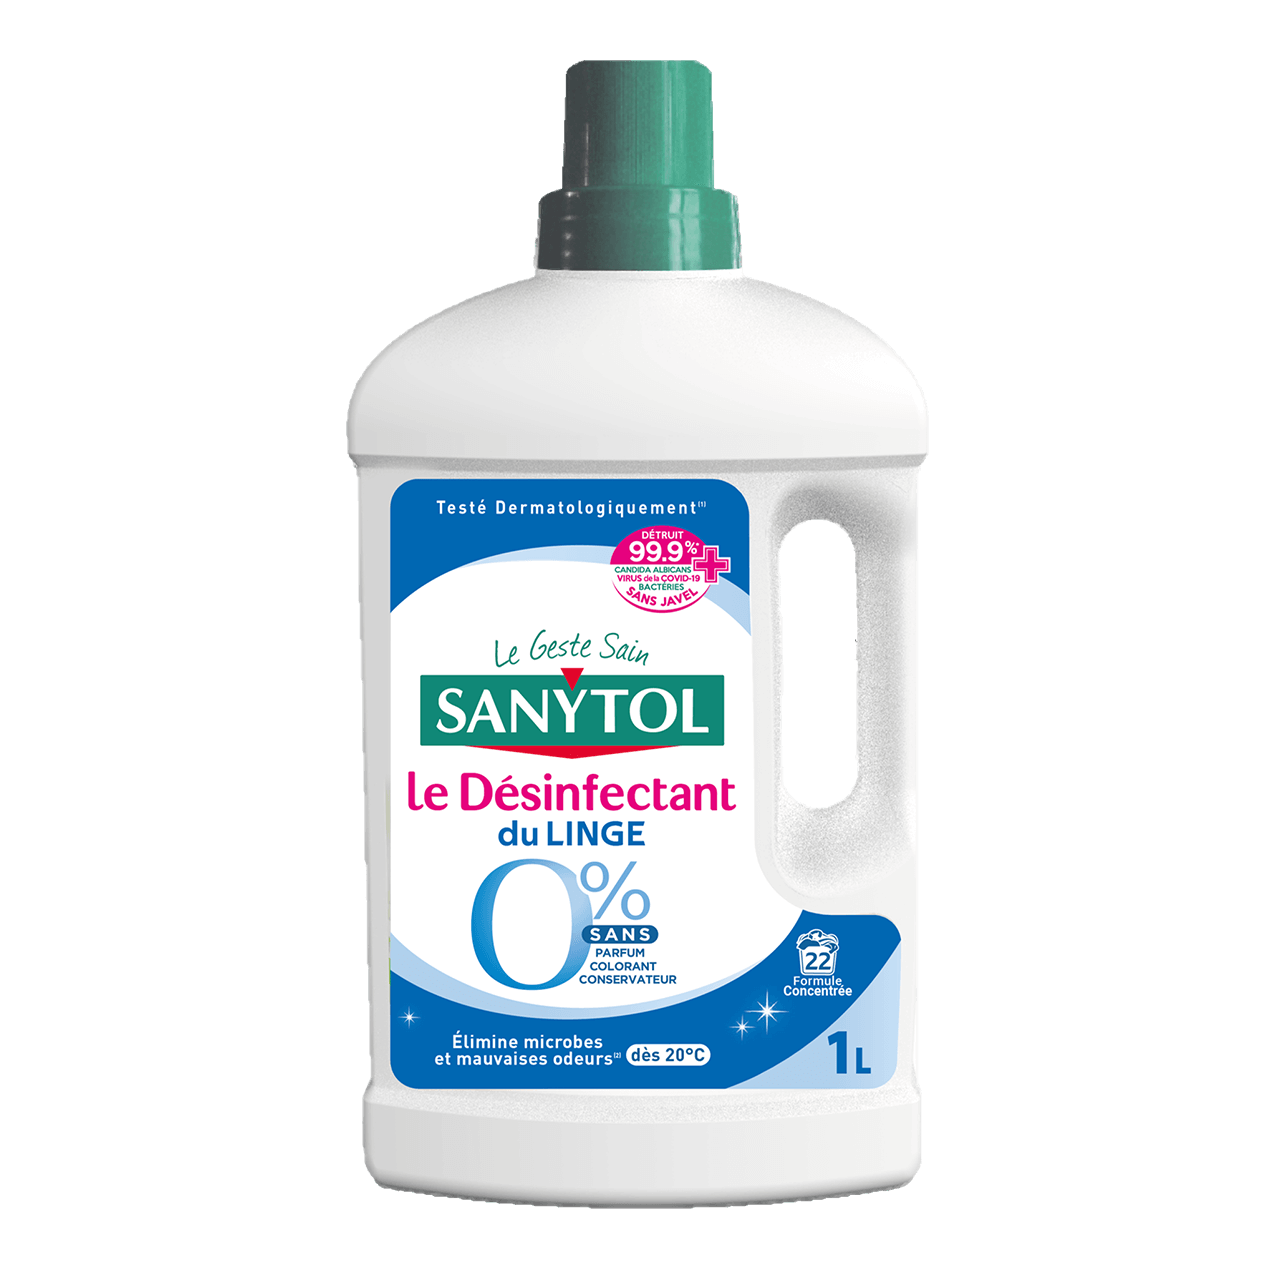 Sanytol désinfectant désodorisant textile: propreté textile assurée